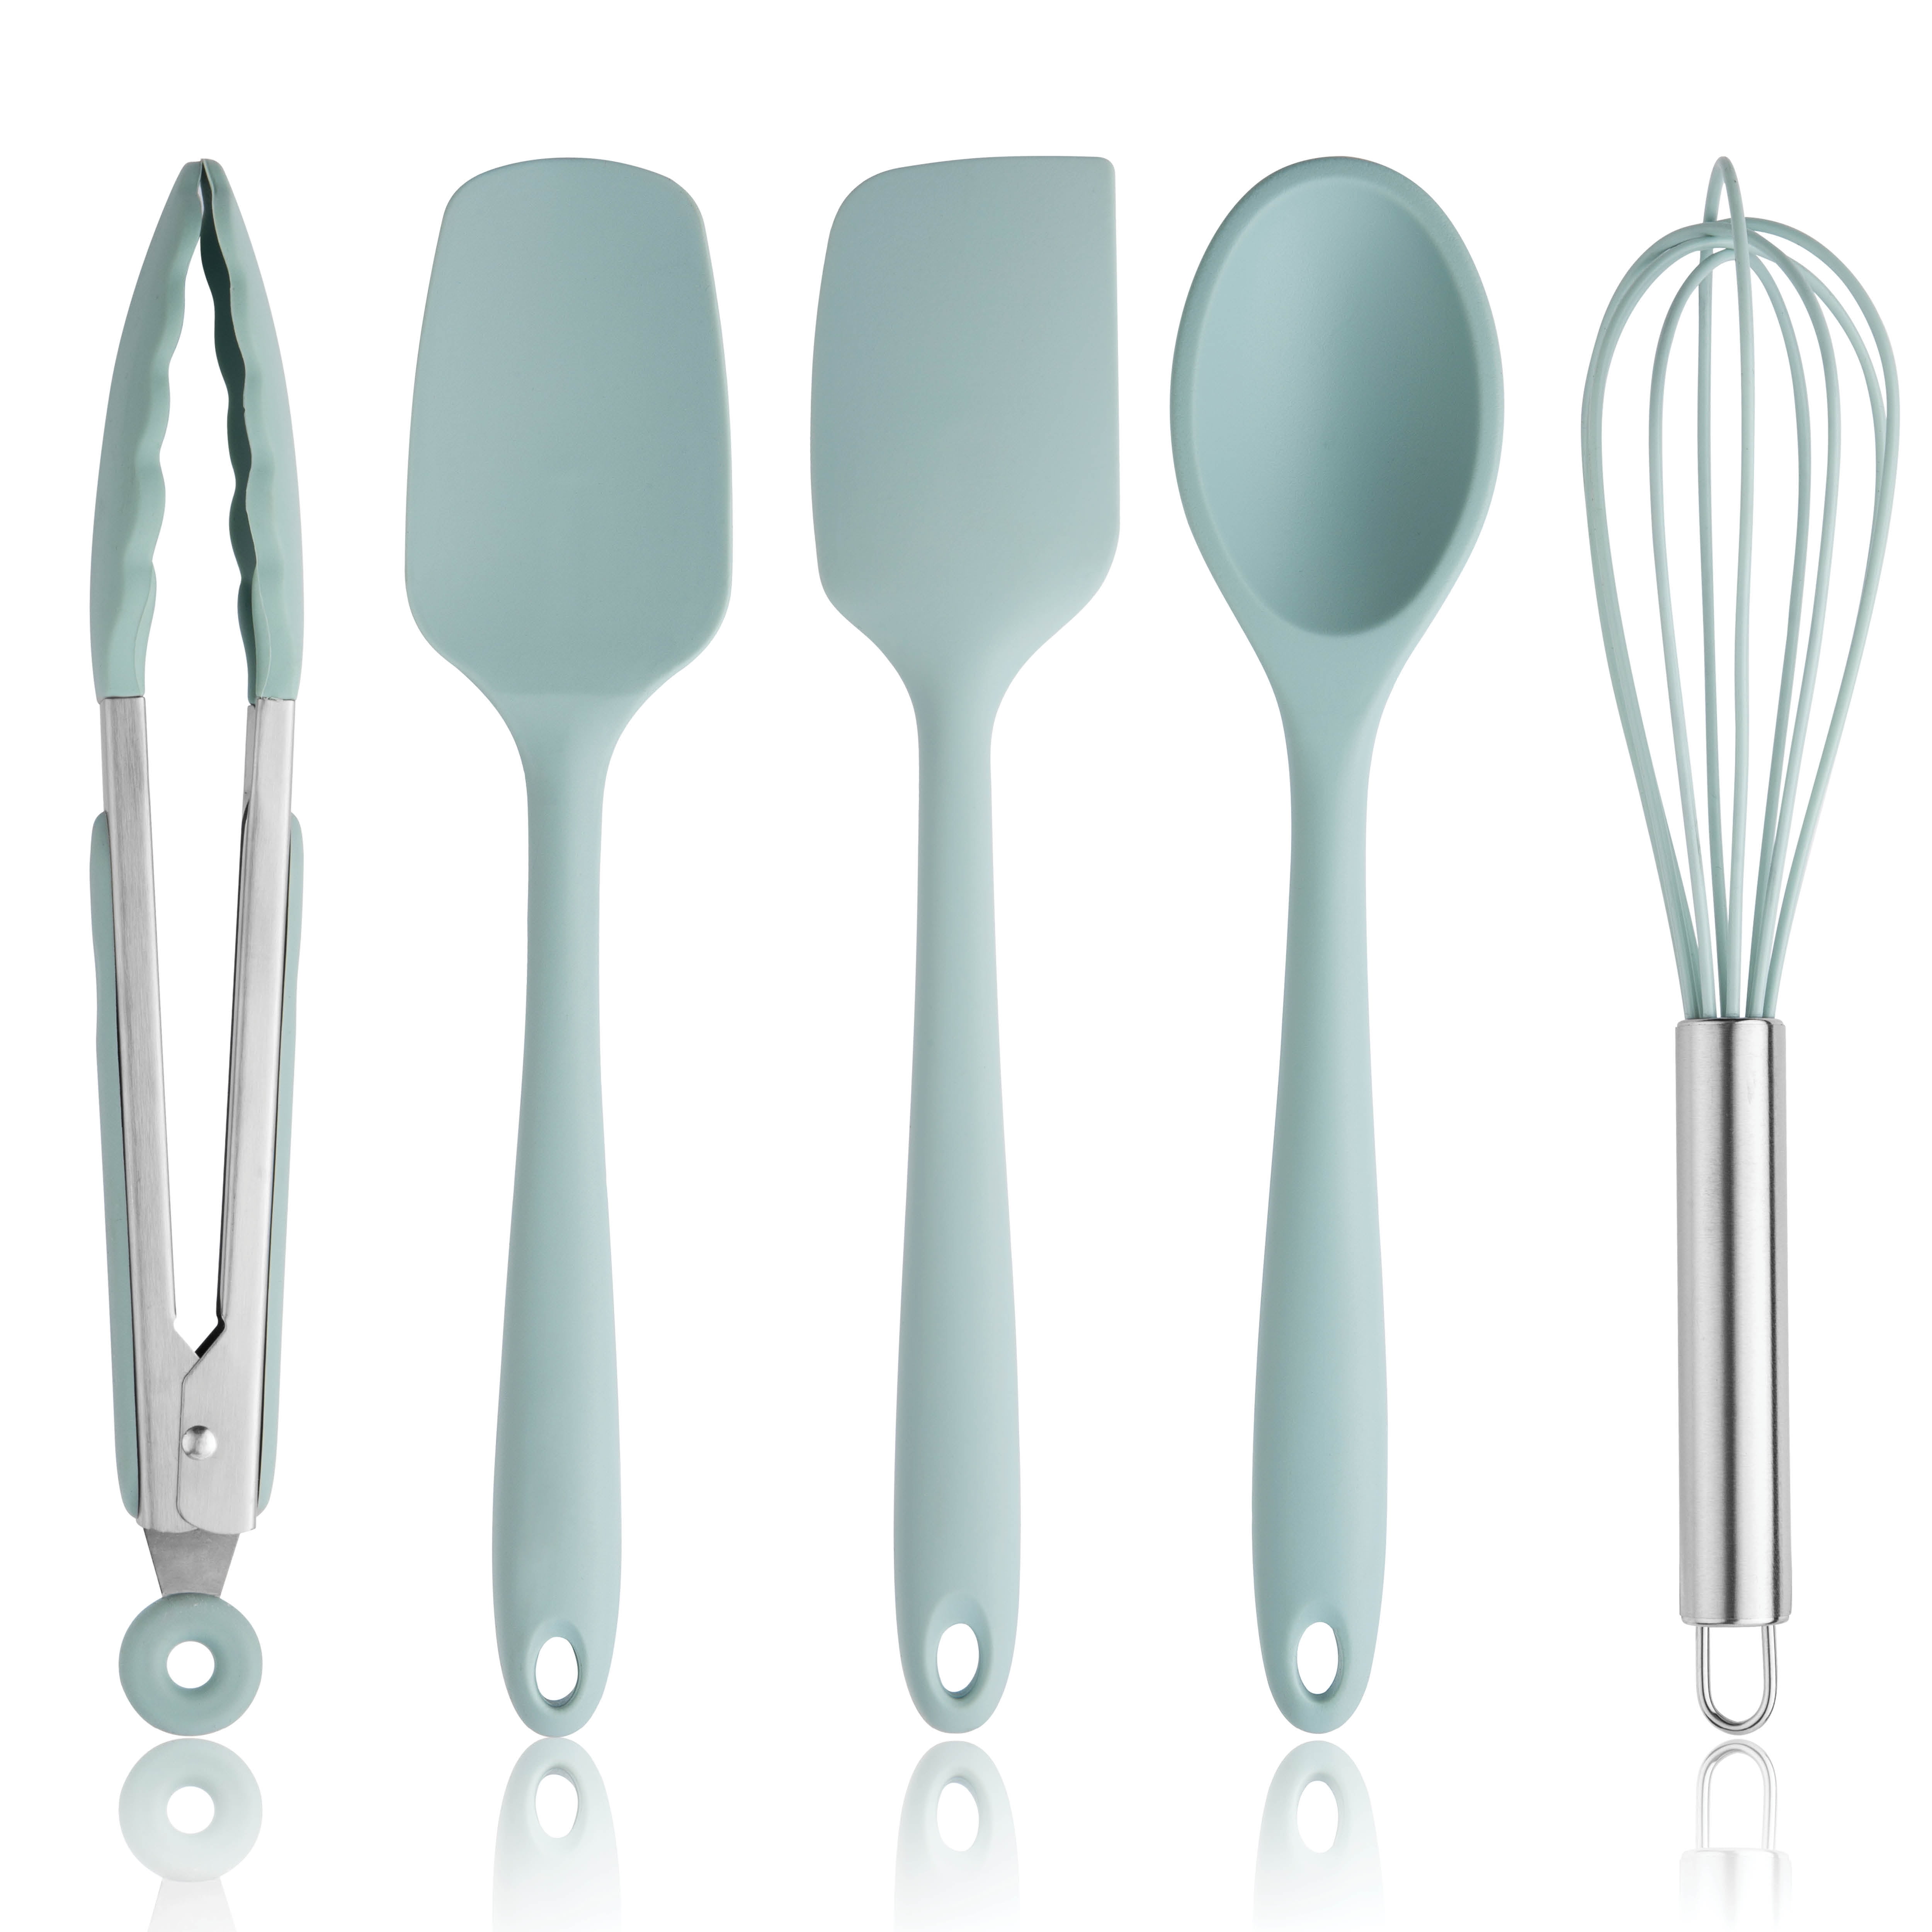 Silicone kitchenware set five-piece spatula green 